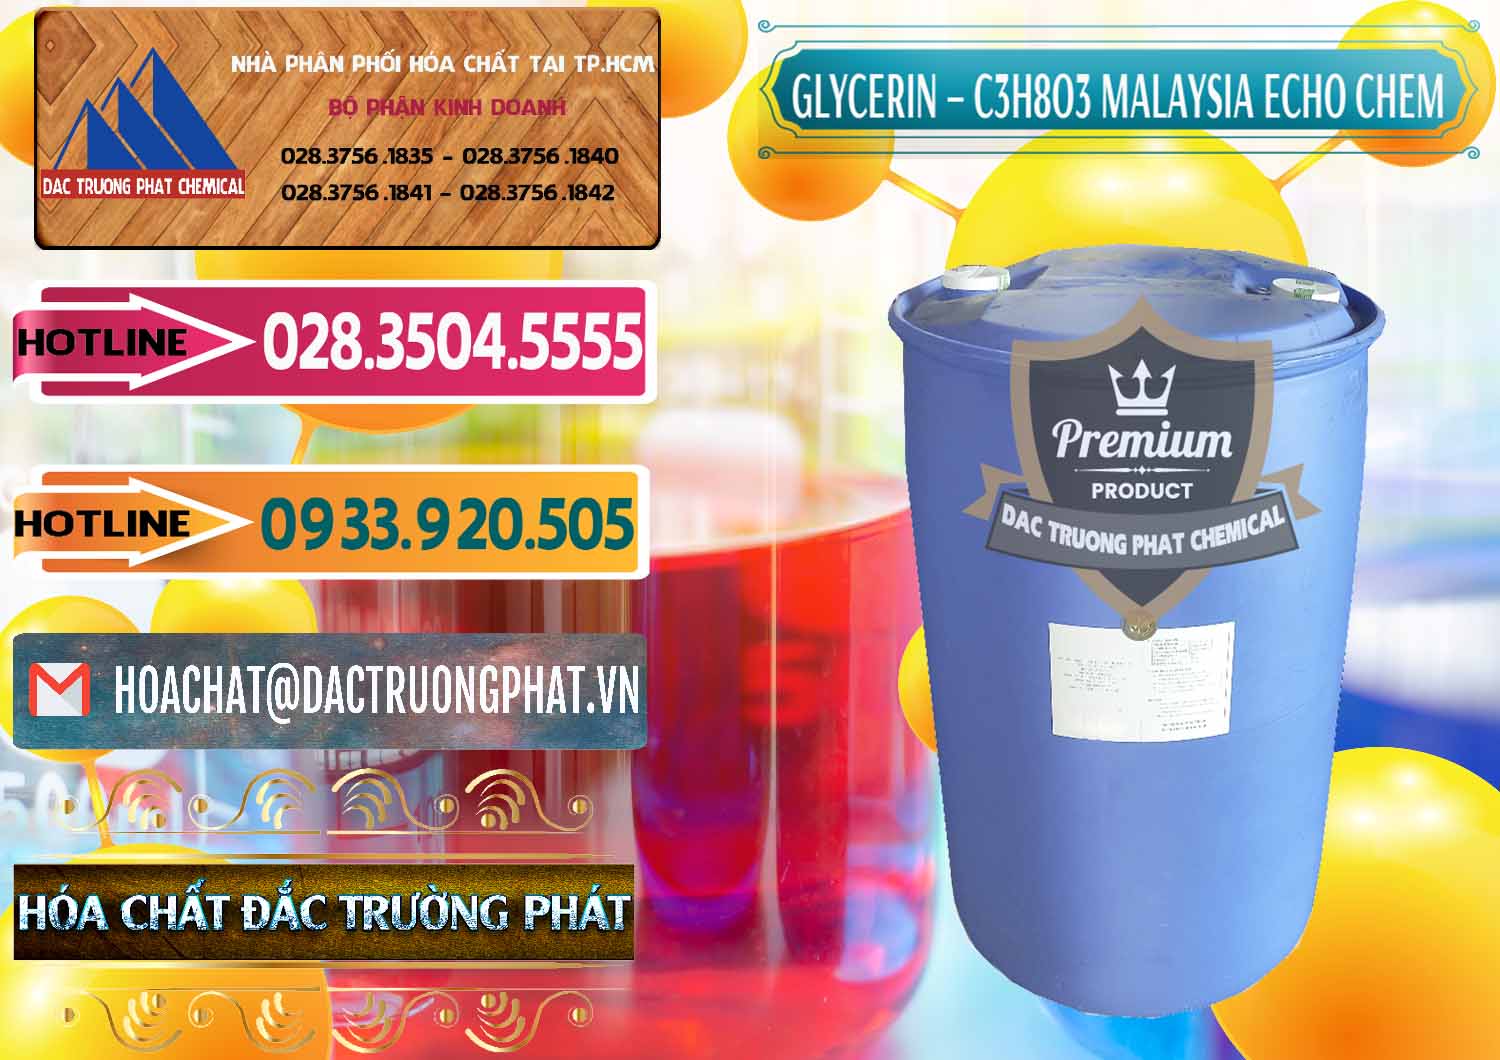 Nơi chuyên phân phối - bán Glycerin – C3H8O3 99.7% Echo Chem Malaysia - 0273 - Nơi chuyên phân phối và nhập khẩu hóa chất tại TP.HCM - dactruongphat.vn